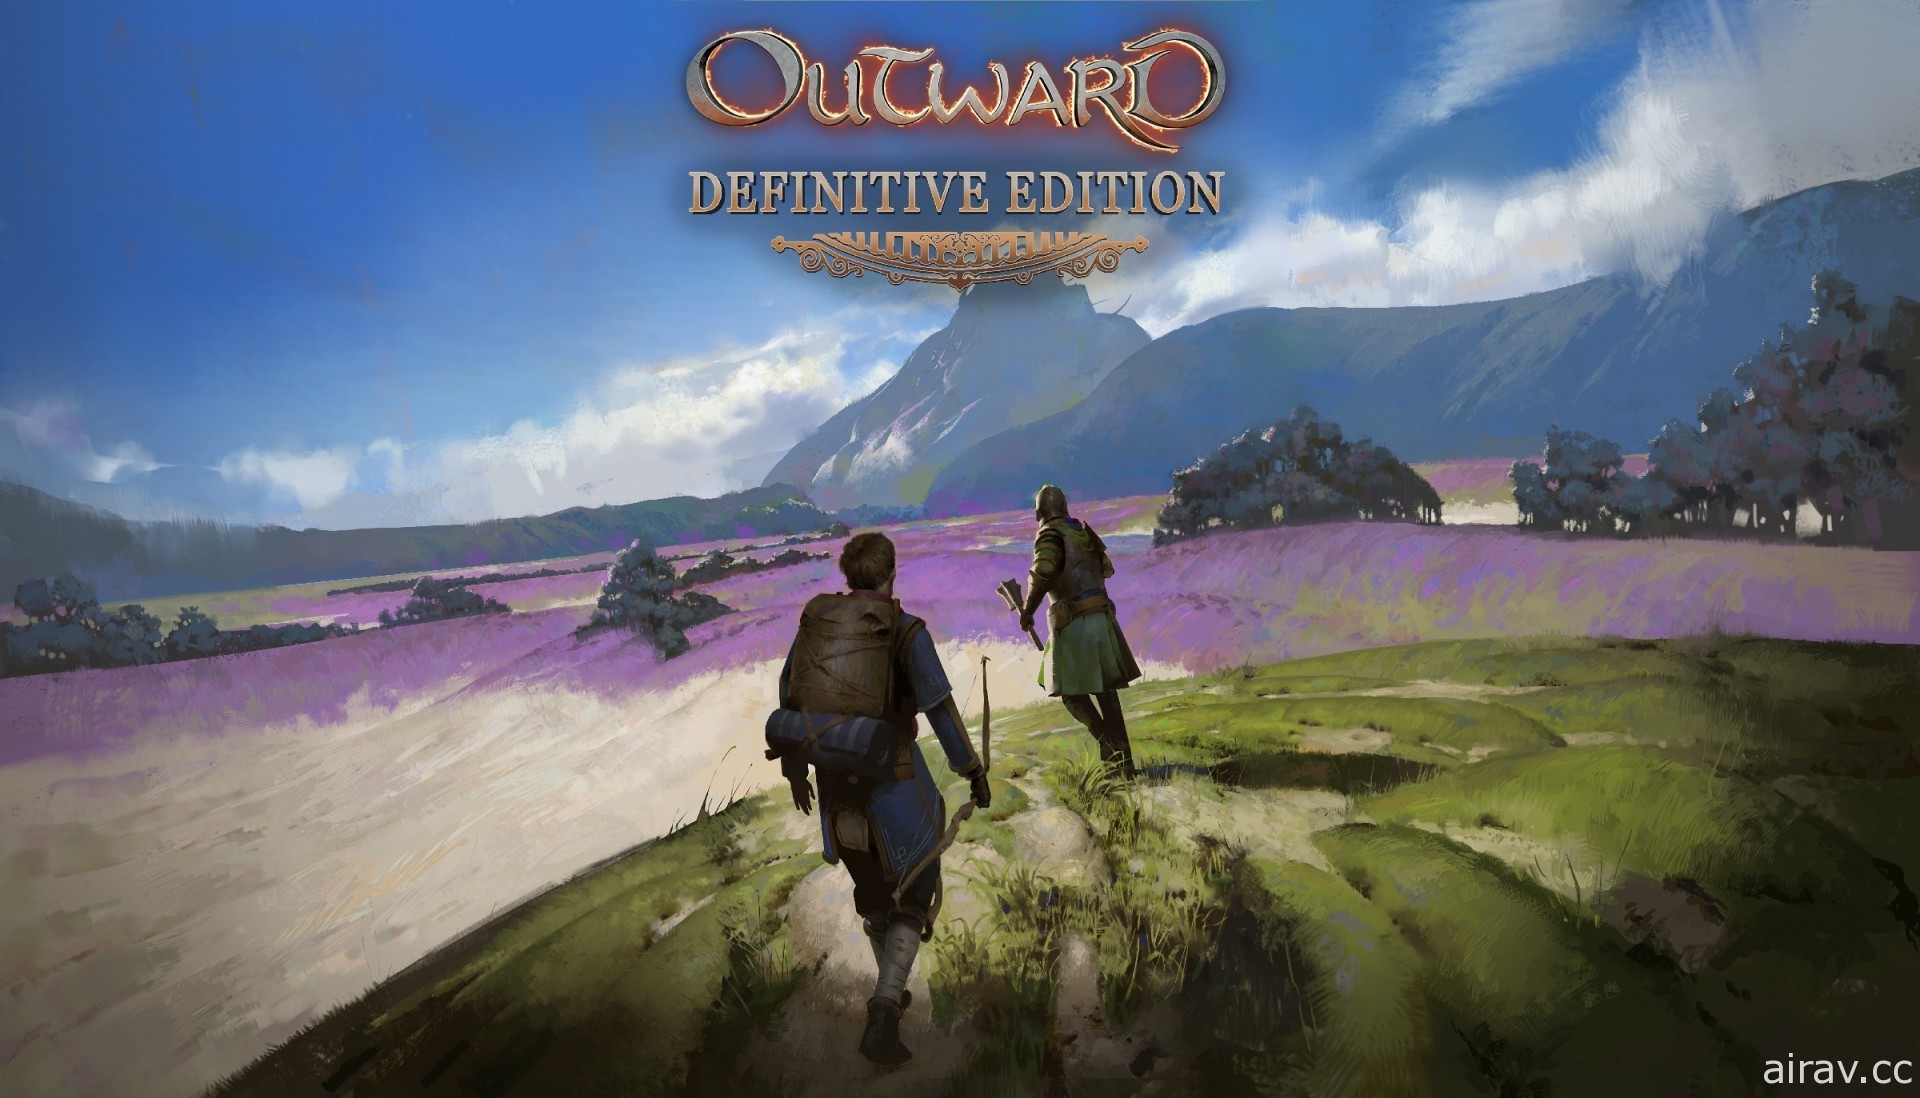 《物质世界 Outward》决定版现已发售 为魔法世界欧鲁拉的终极冒险整装出发